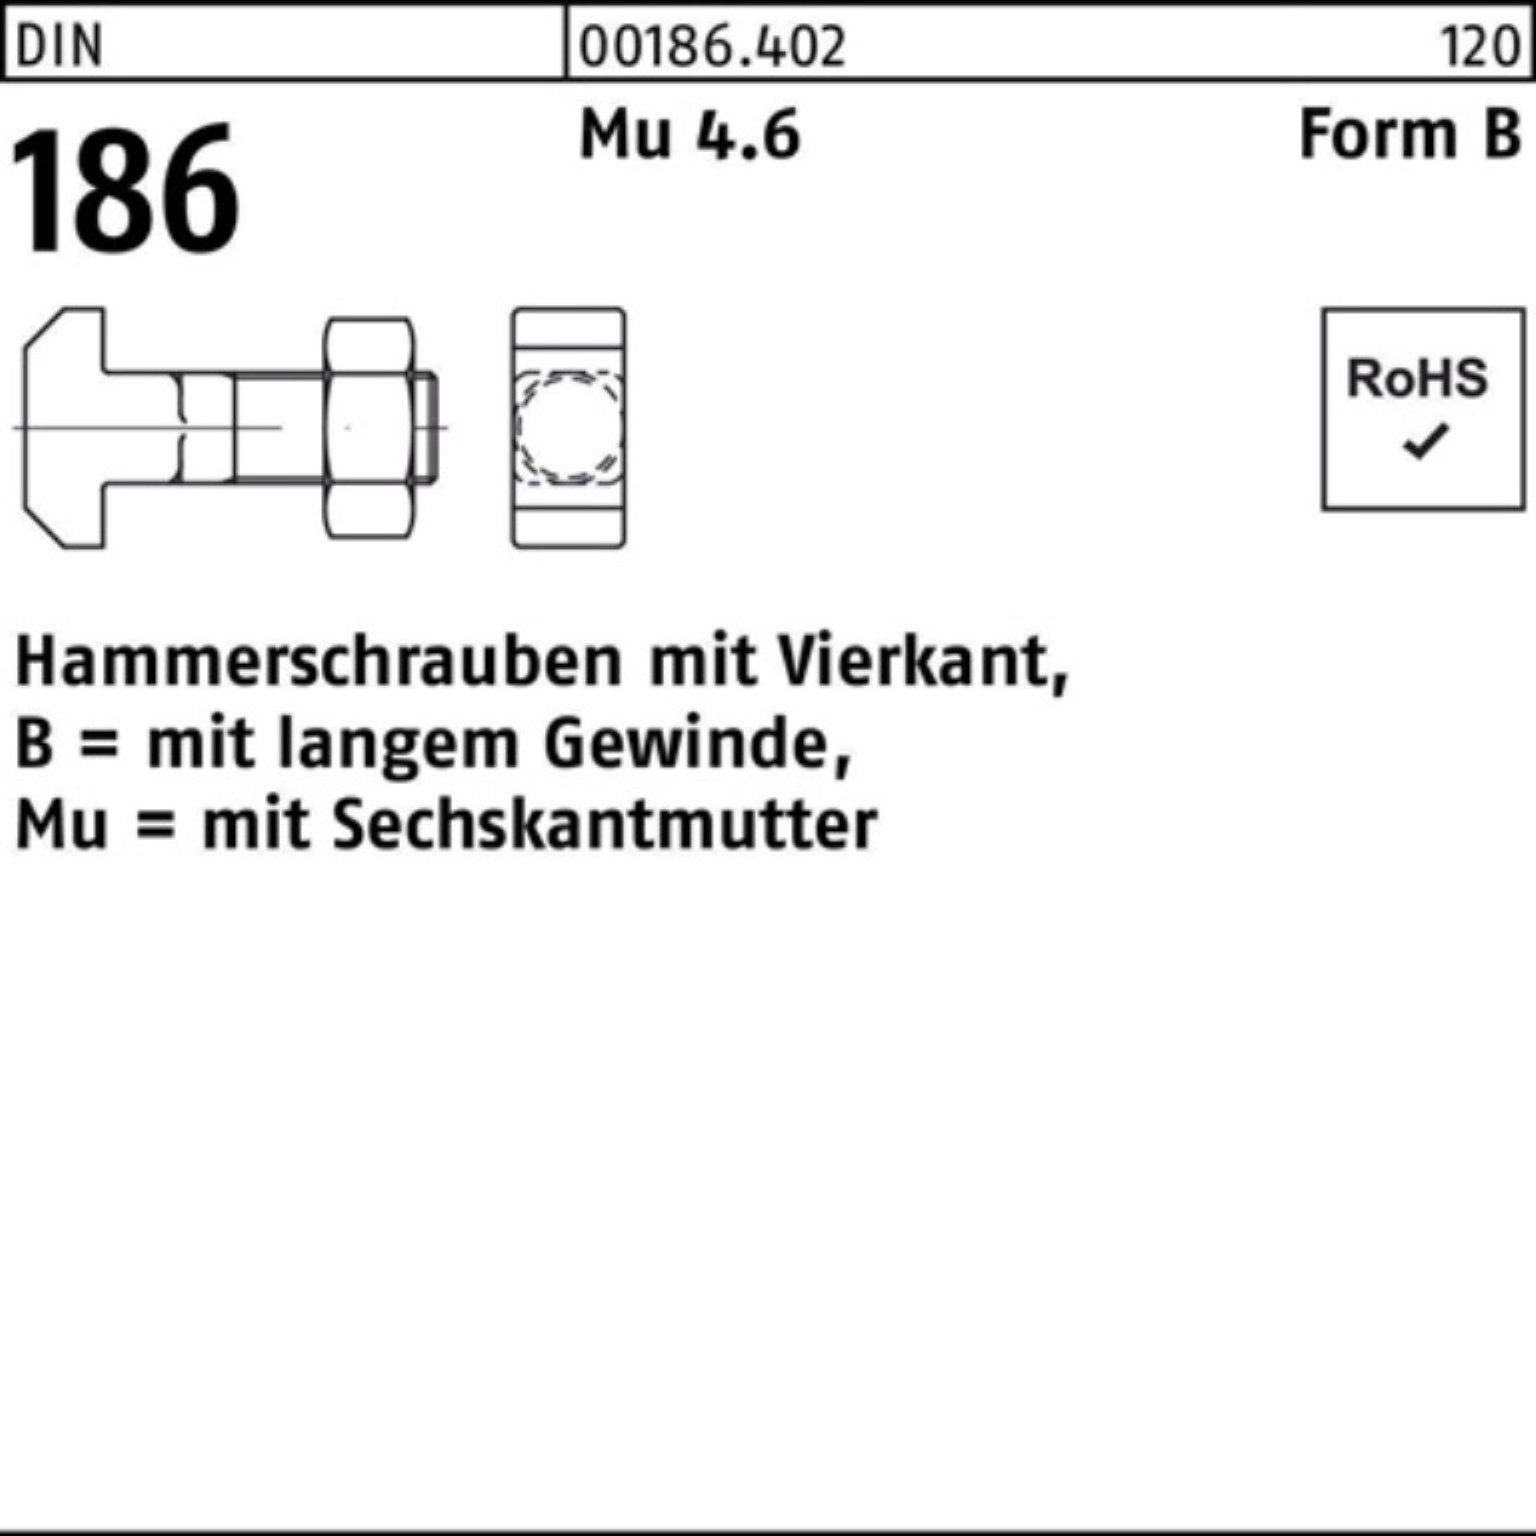 Vierkant 186 160 Schraube 6-ktmutter 20x Hammerschraube 100er Pack FormB Reyher DIN BM